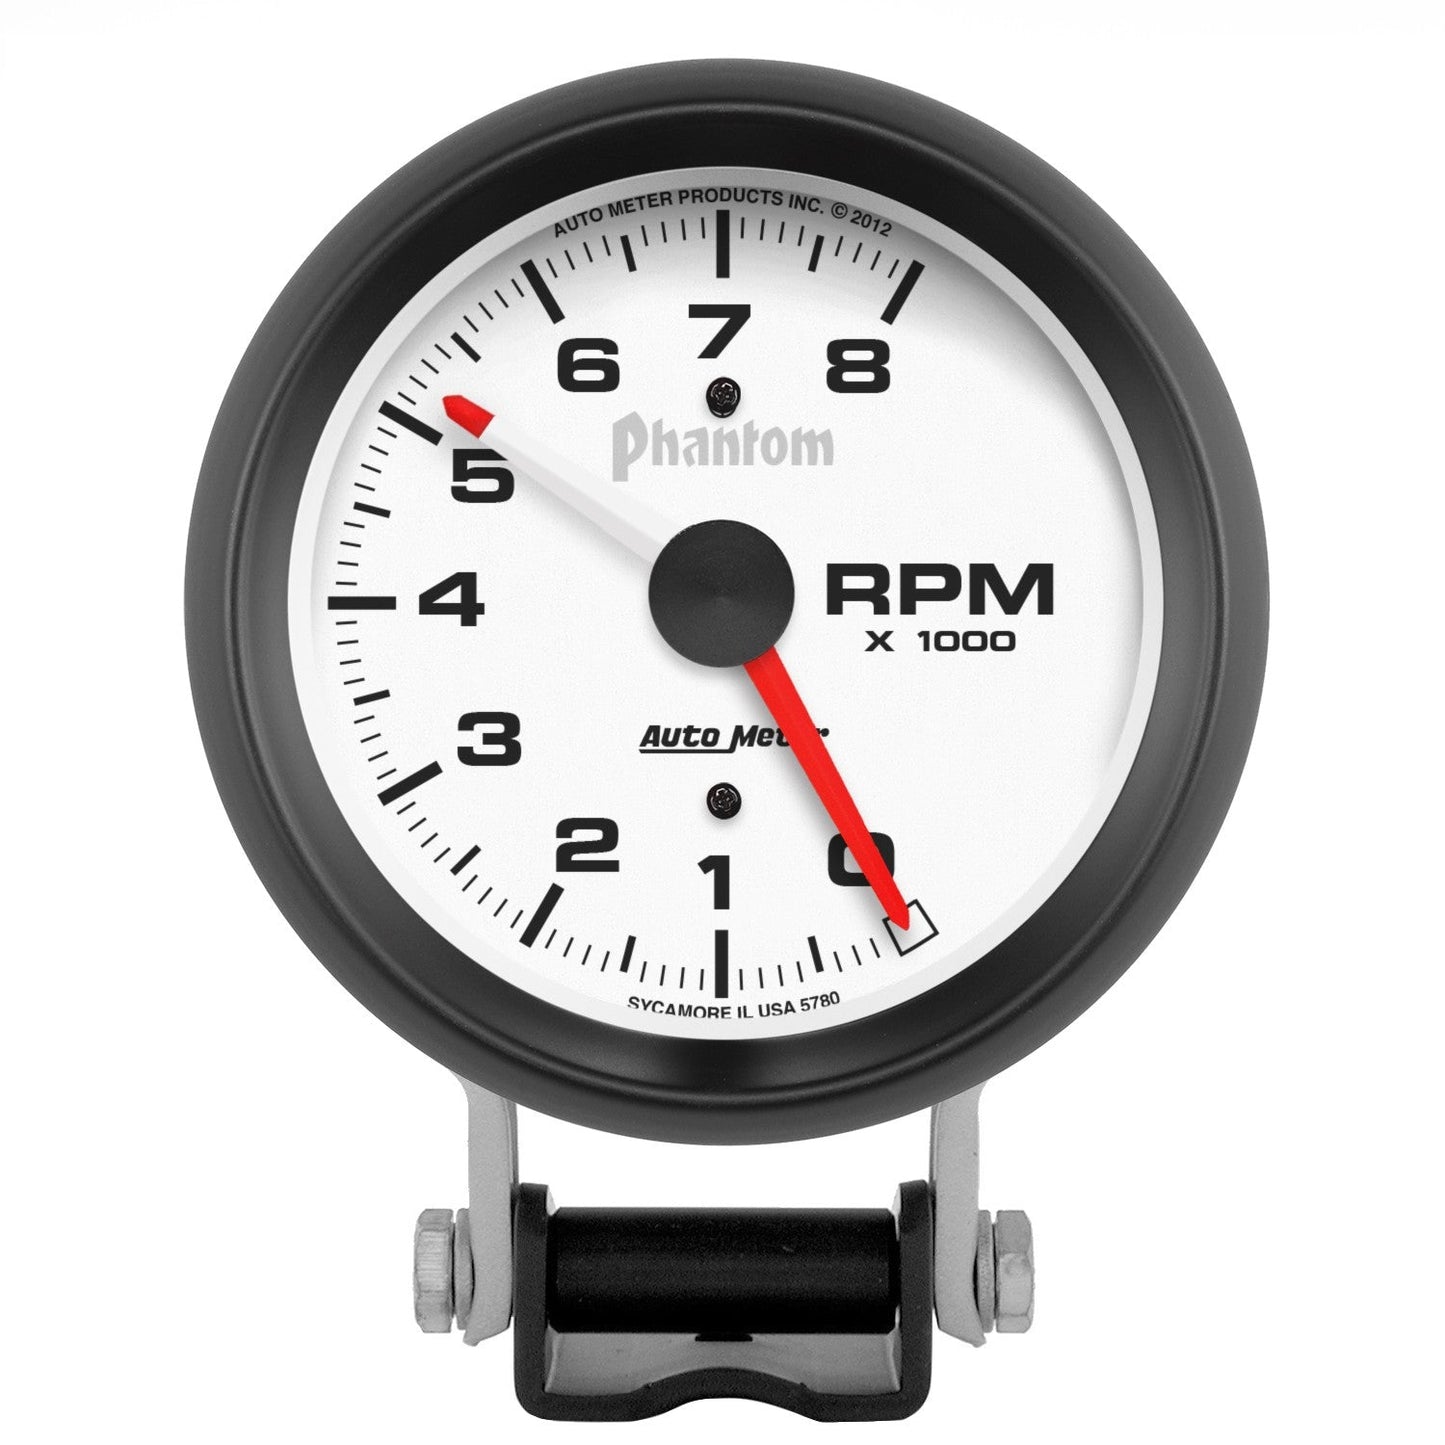 AutoMeter - TACÓMETRO DE PEDESTAL DE 3-3/4", 0-8,000 RPM, PHANTOM (5780)